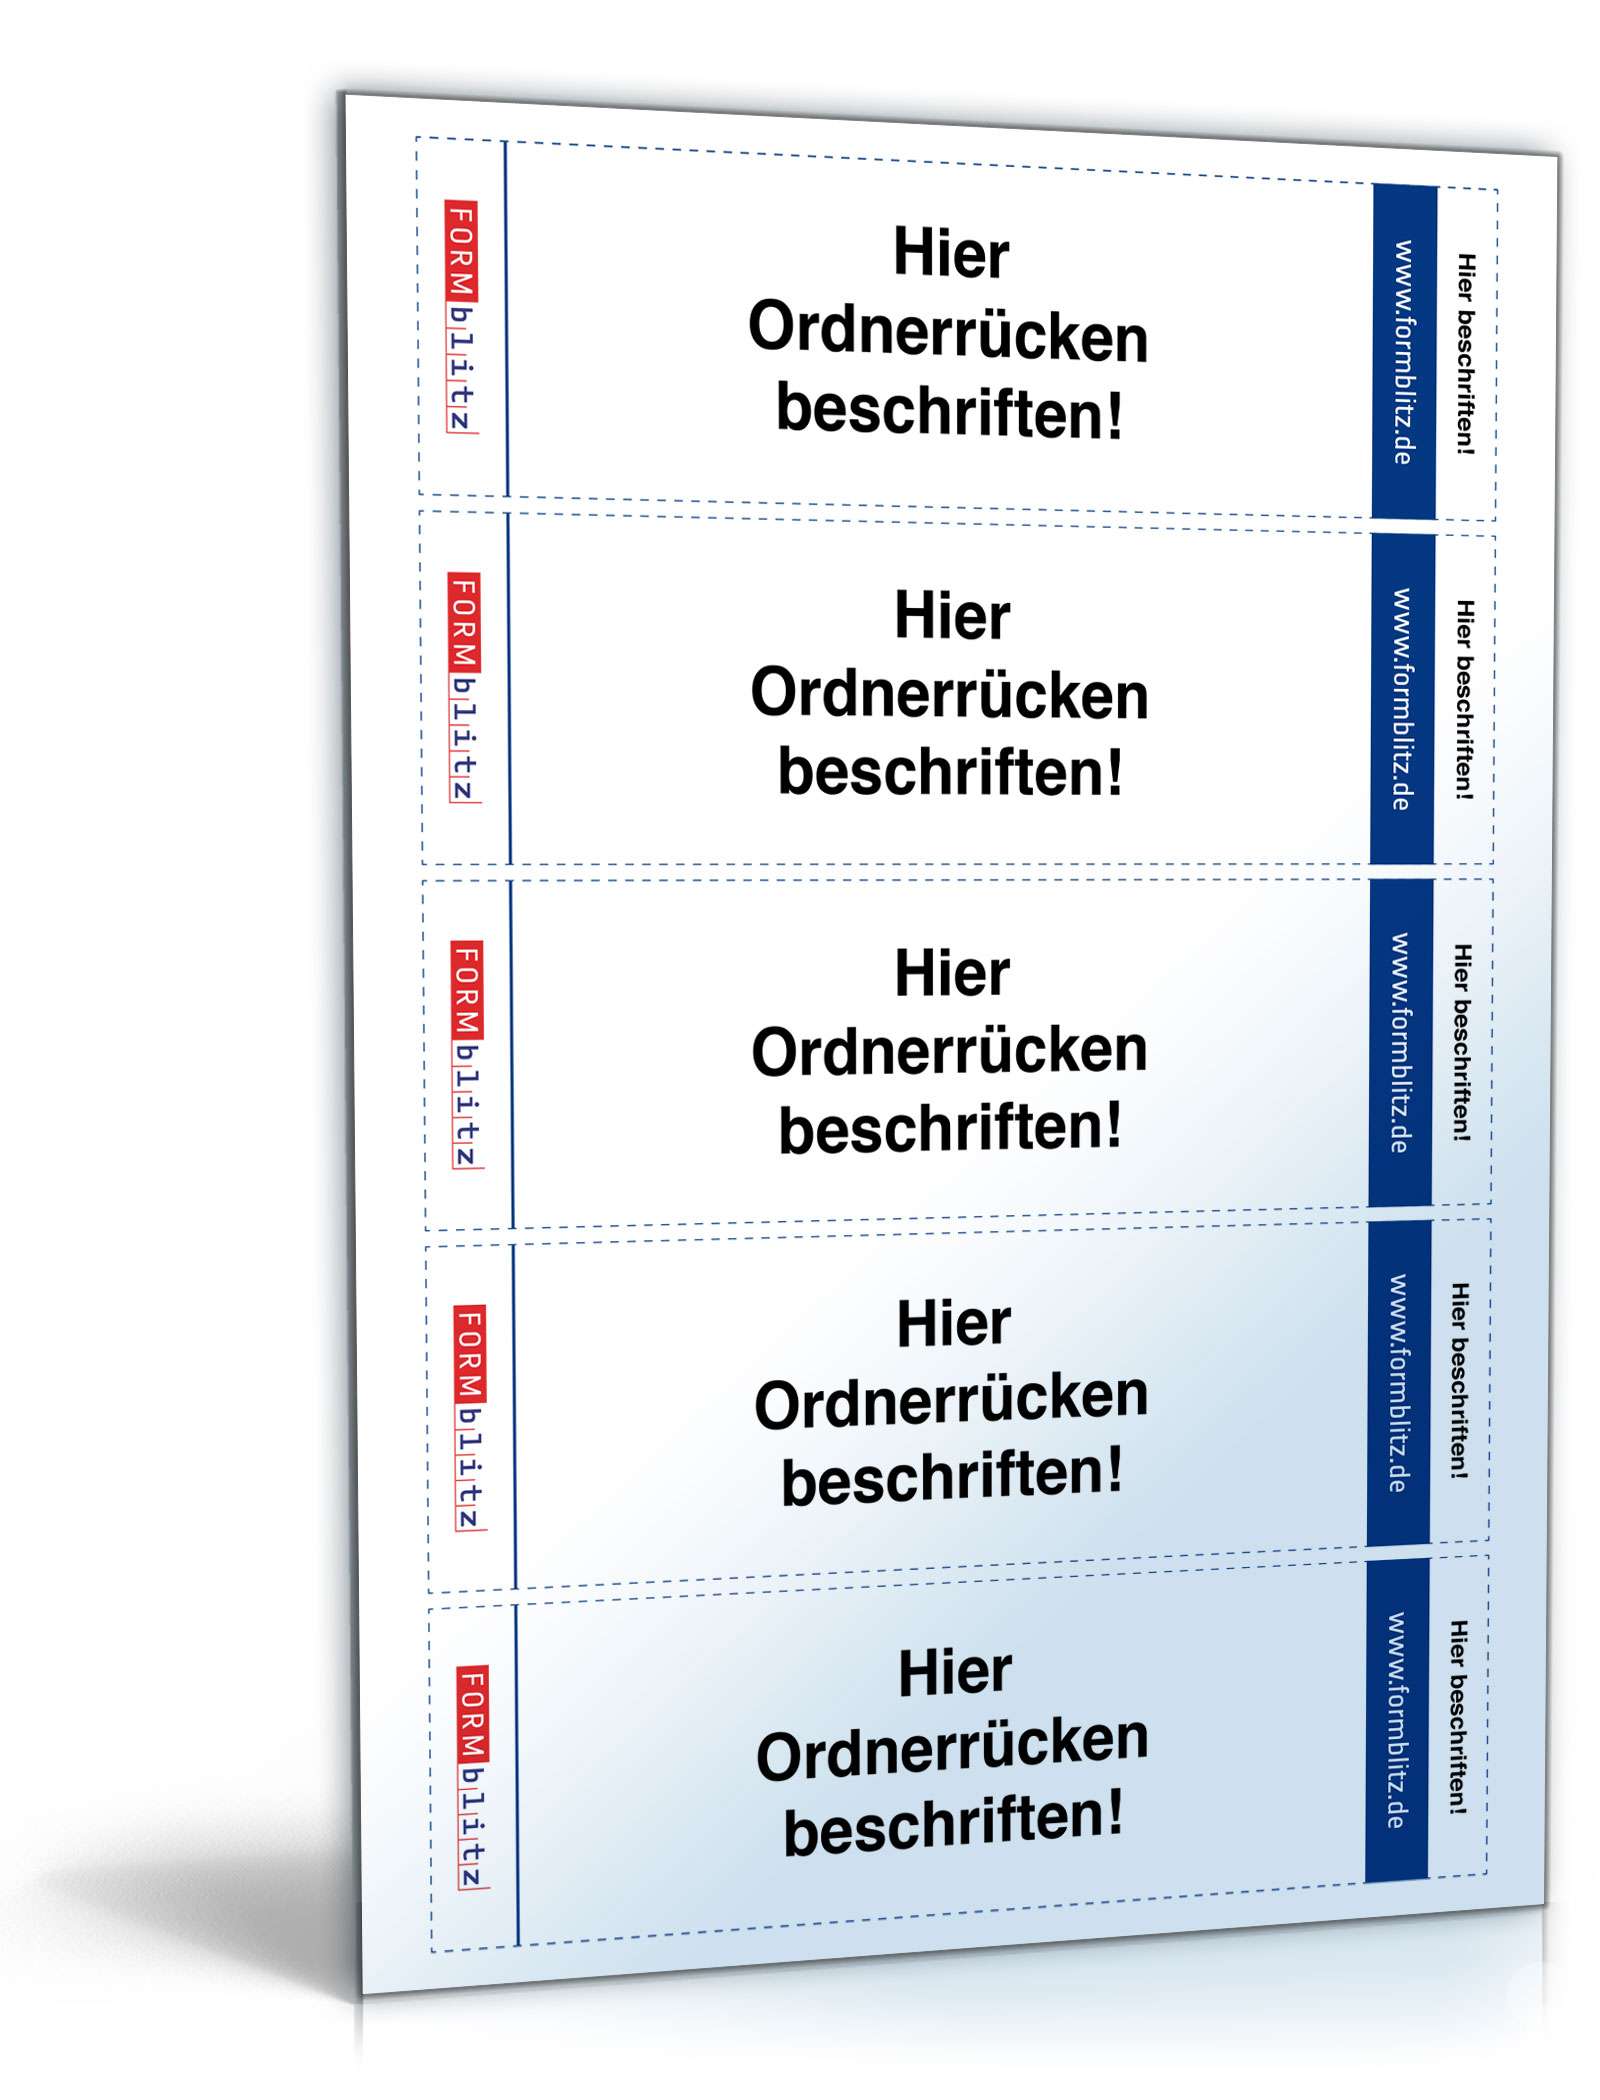 Hauptbild des Produkts: Ordner-Rücken für Leitz-Ordner (5,3 x 18,8), hoch